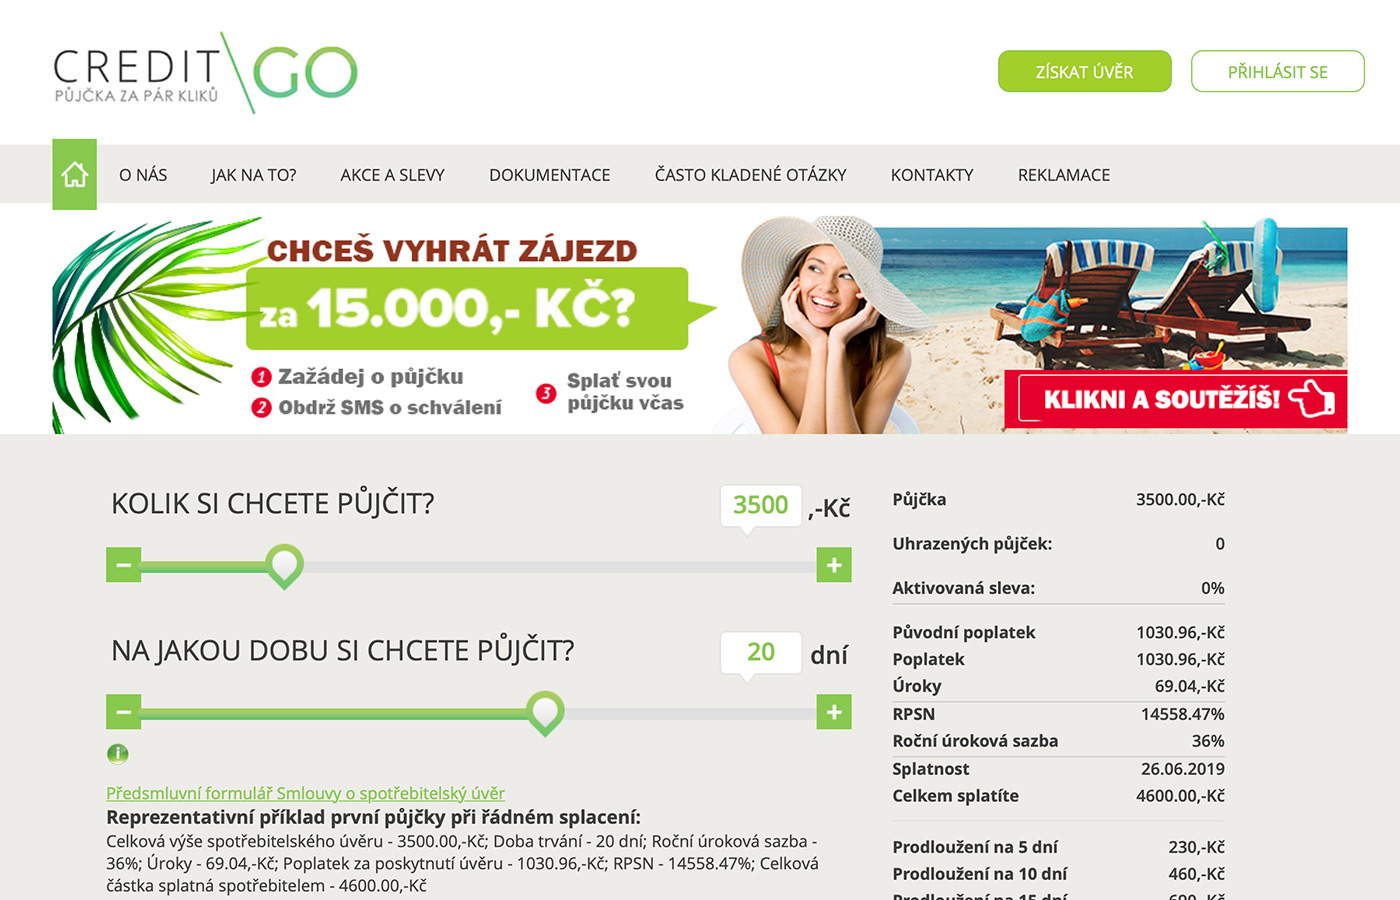 CreditGO půjčka (www.creditgo.cz) - Recenze, zkušenosti a ...